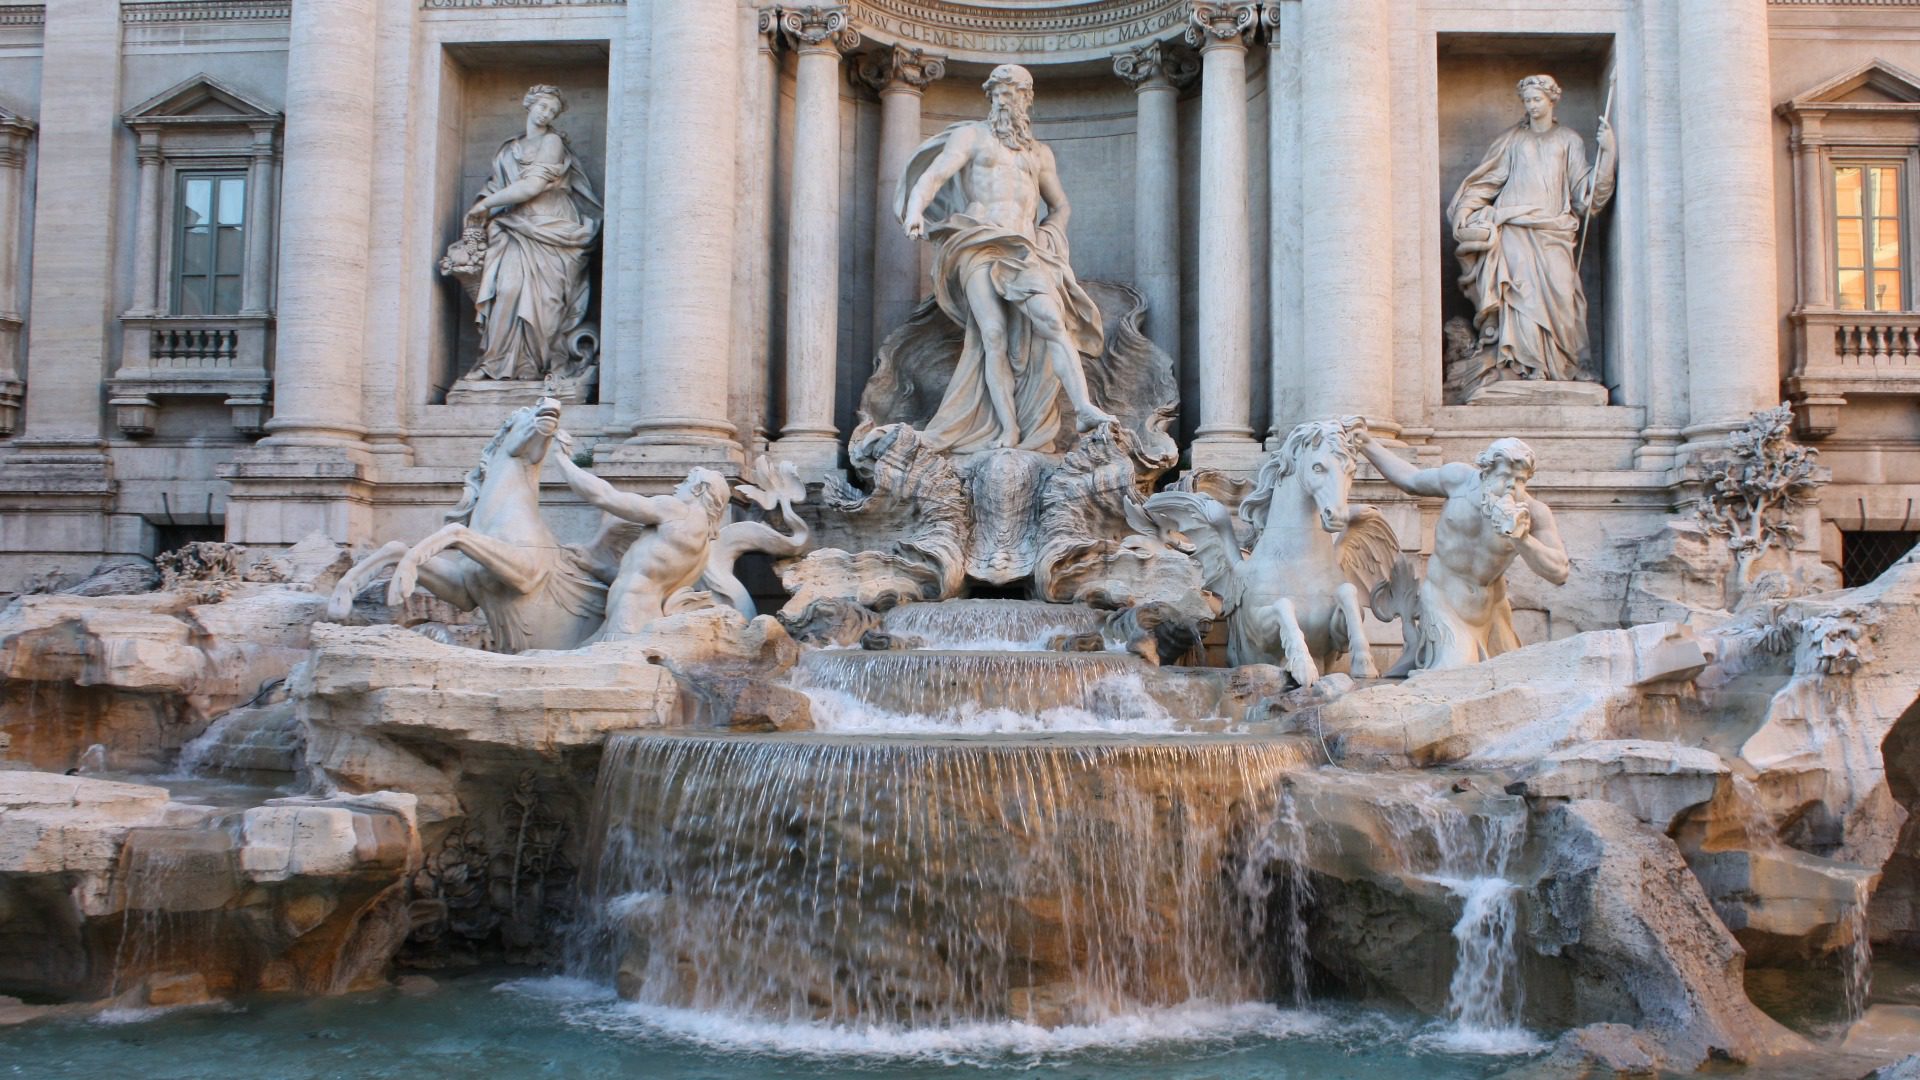 La fontaine de Trevi, à Rome, est vidée et nettoyée chaque matin sous surveillance policière. (Flickr/David Lebech/CC BY-NC 2.0)